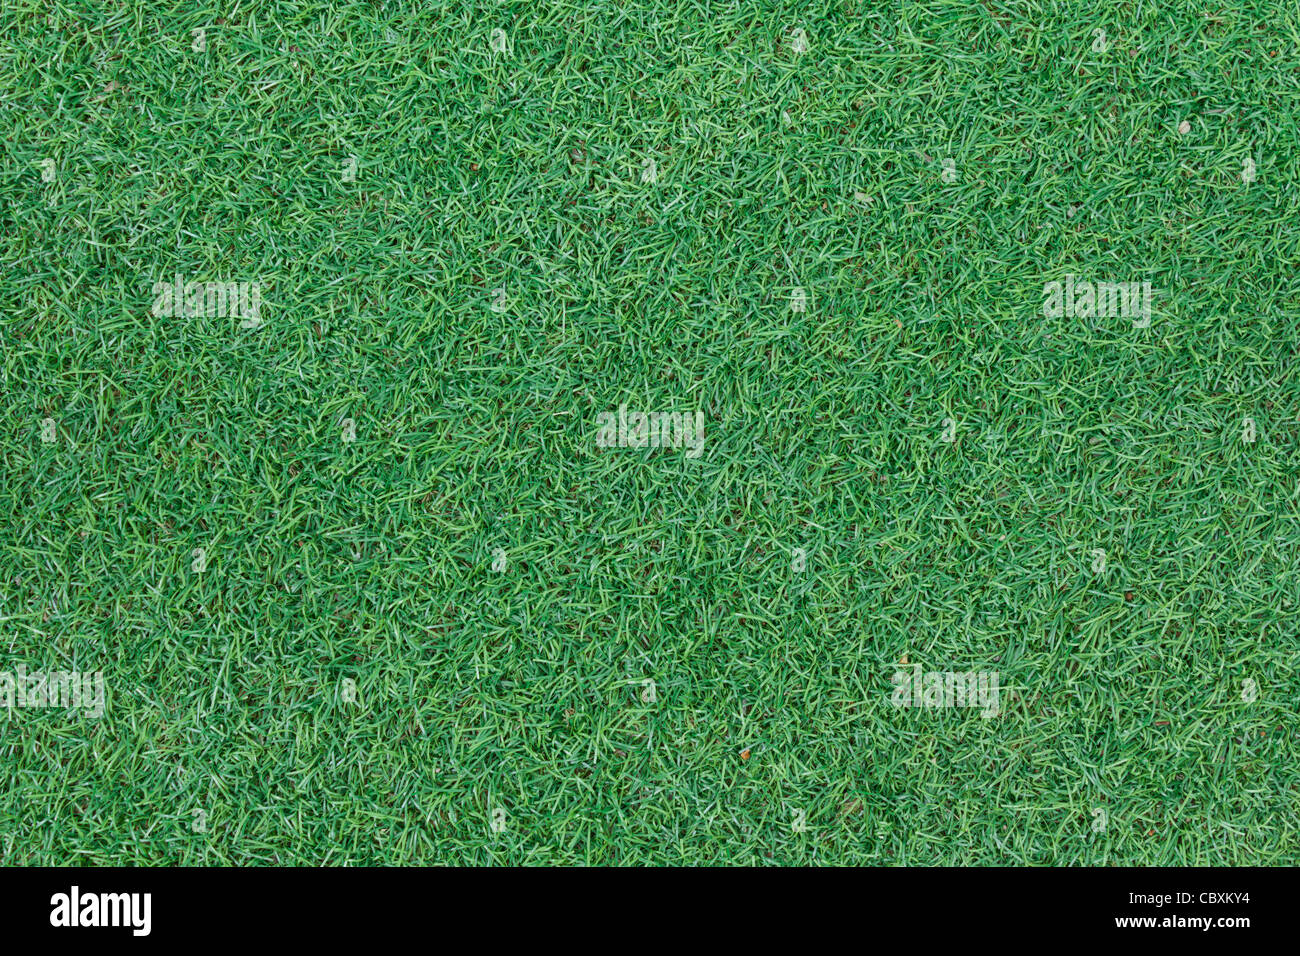 Textura de fondo con falsos hierba en un parque infantil público, vista superior Foto de stock